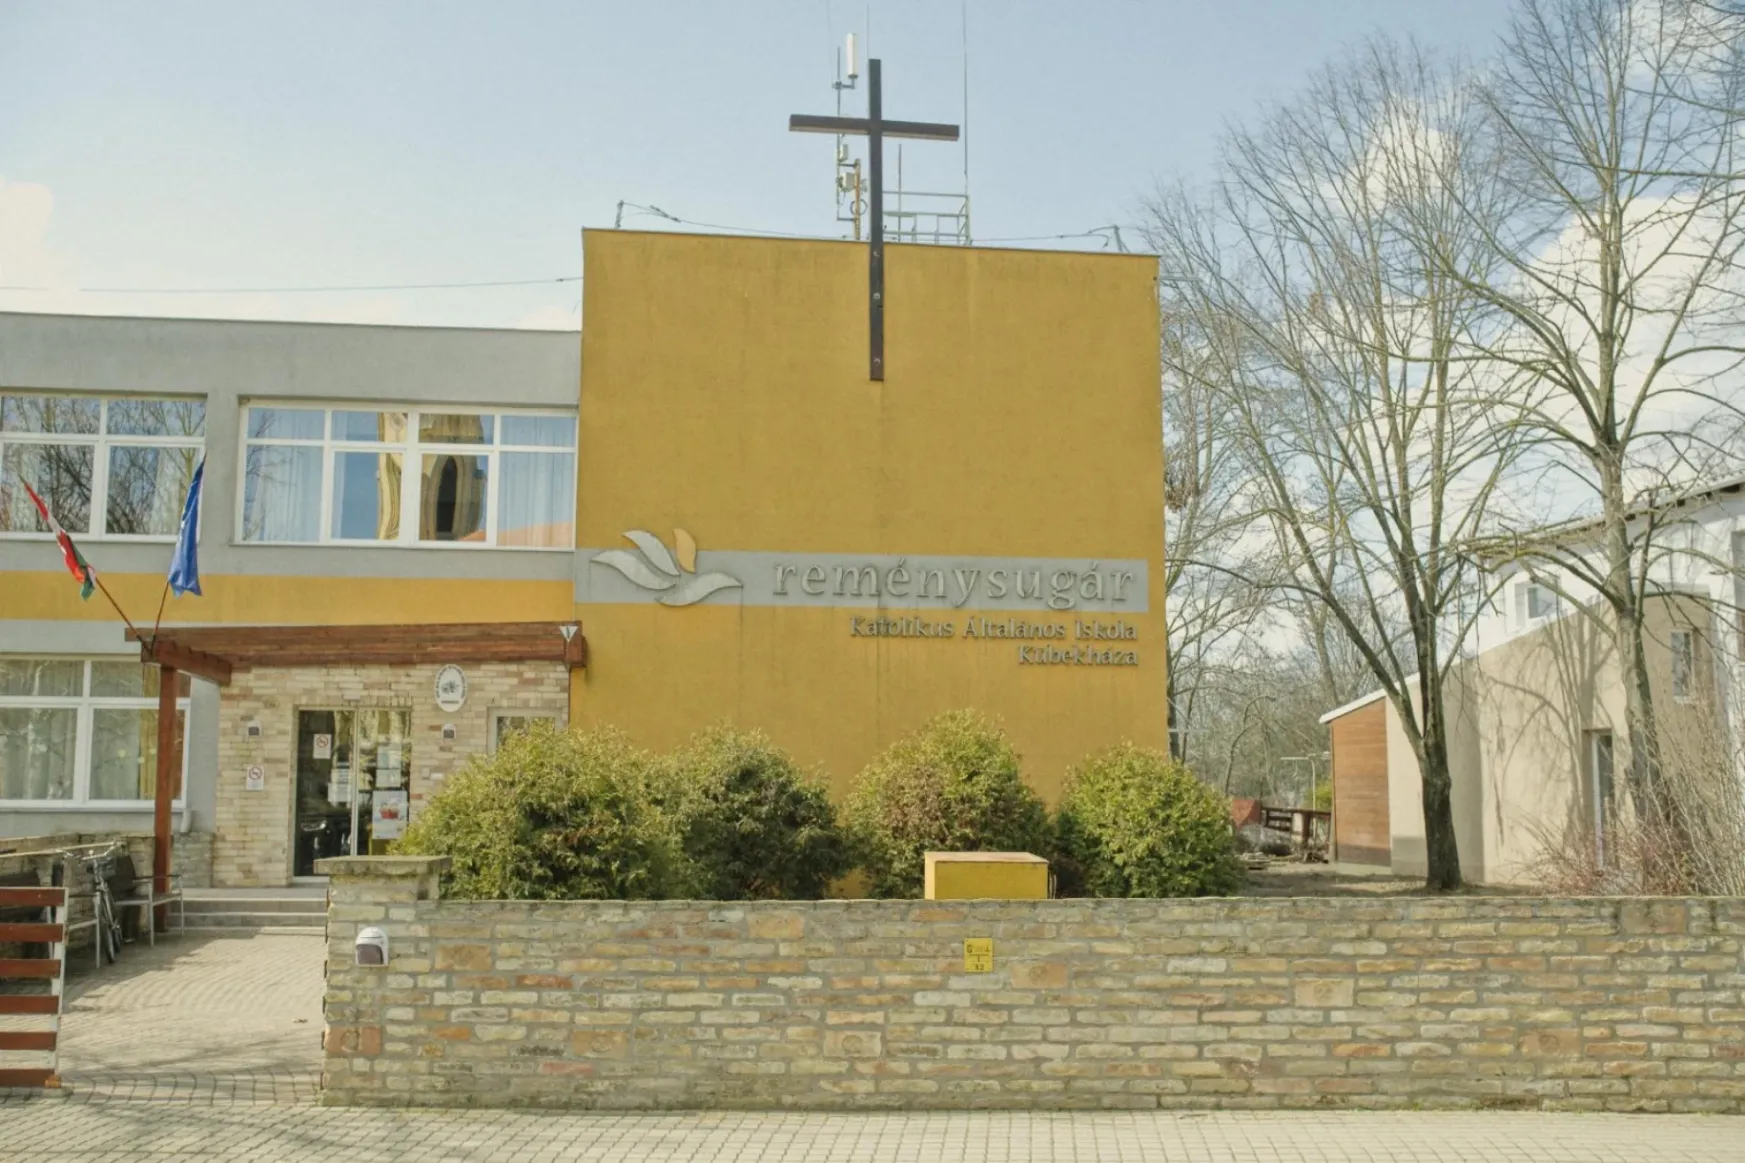 Lemondott az egyház a kübekházi iskoláról, miután a község nem akarta azt ingyen átadni